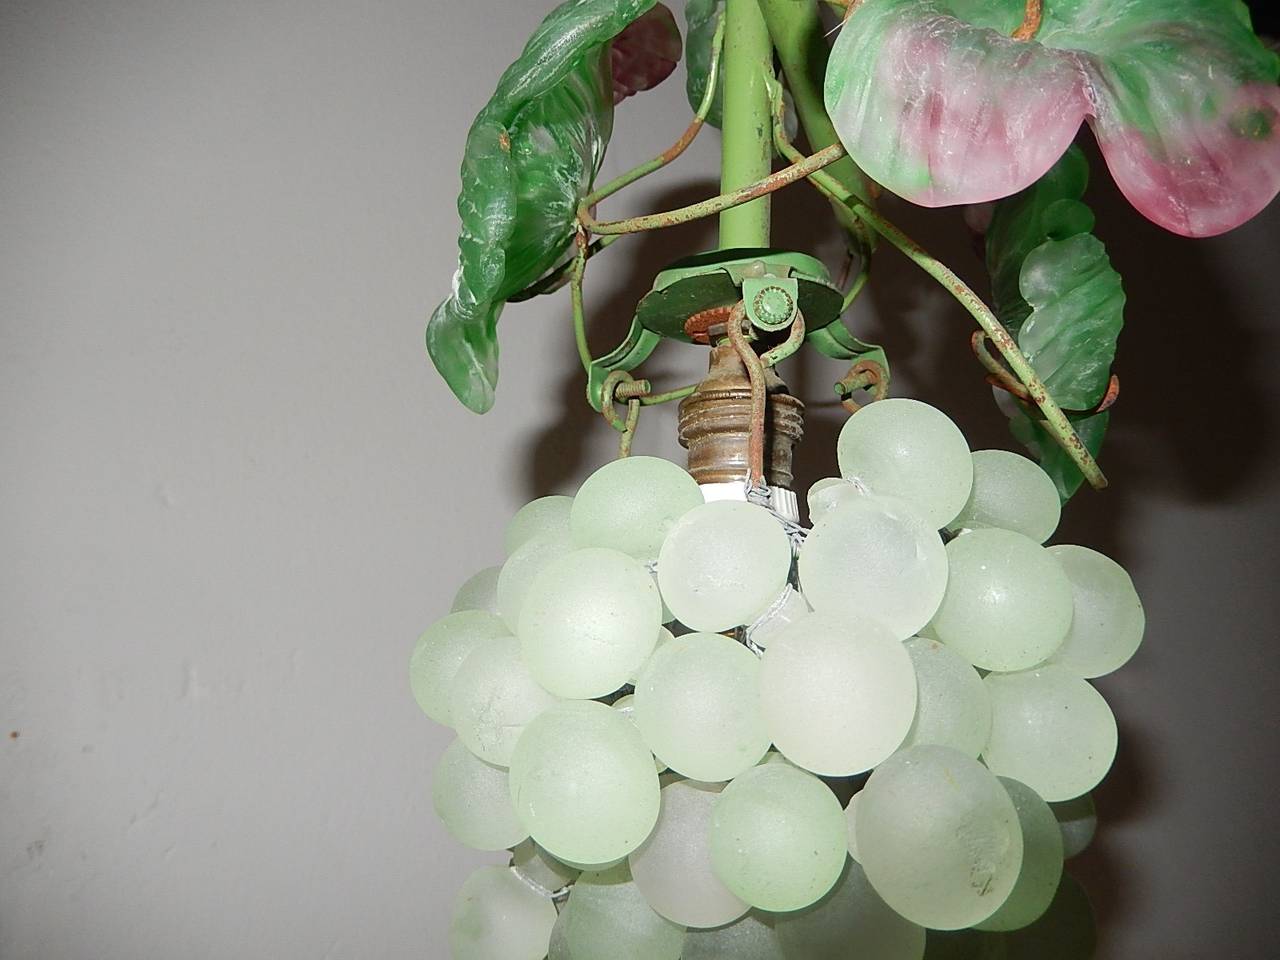 grapes wrea green